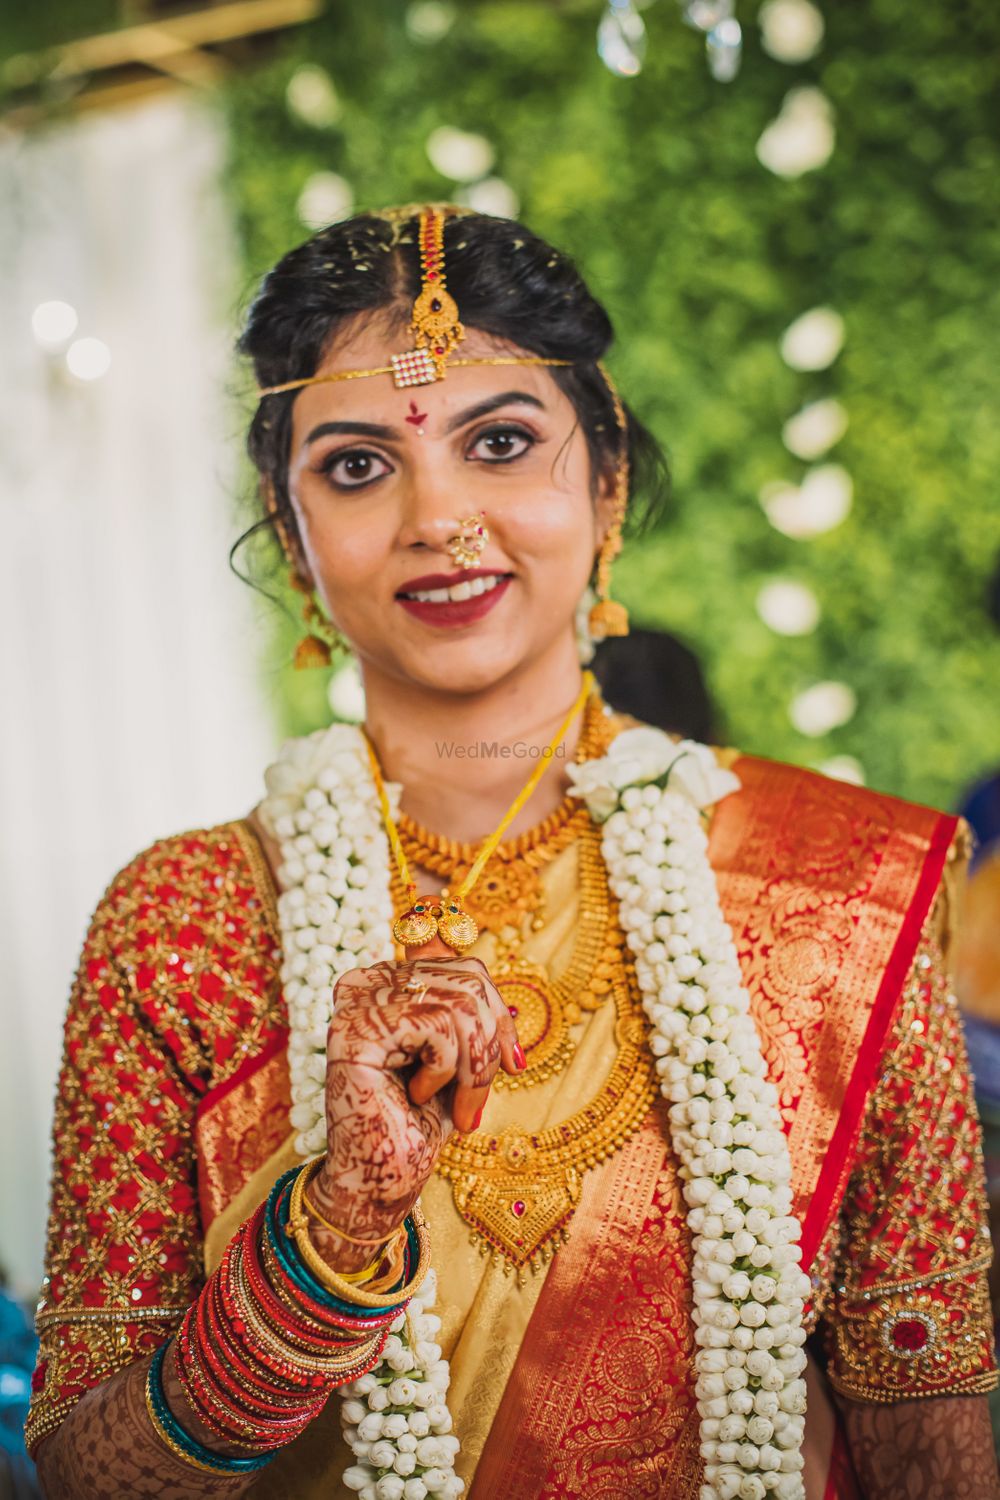 Photo From Shodhana & Naveen Wedding - By Kumarsphoto